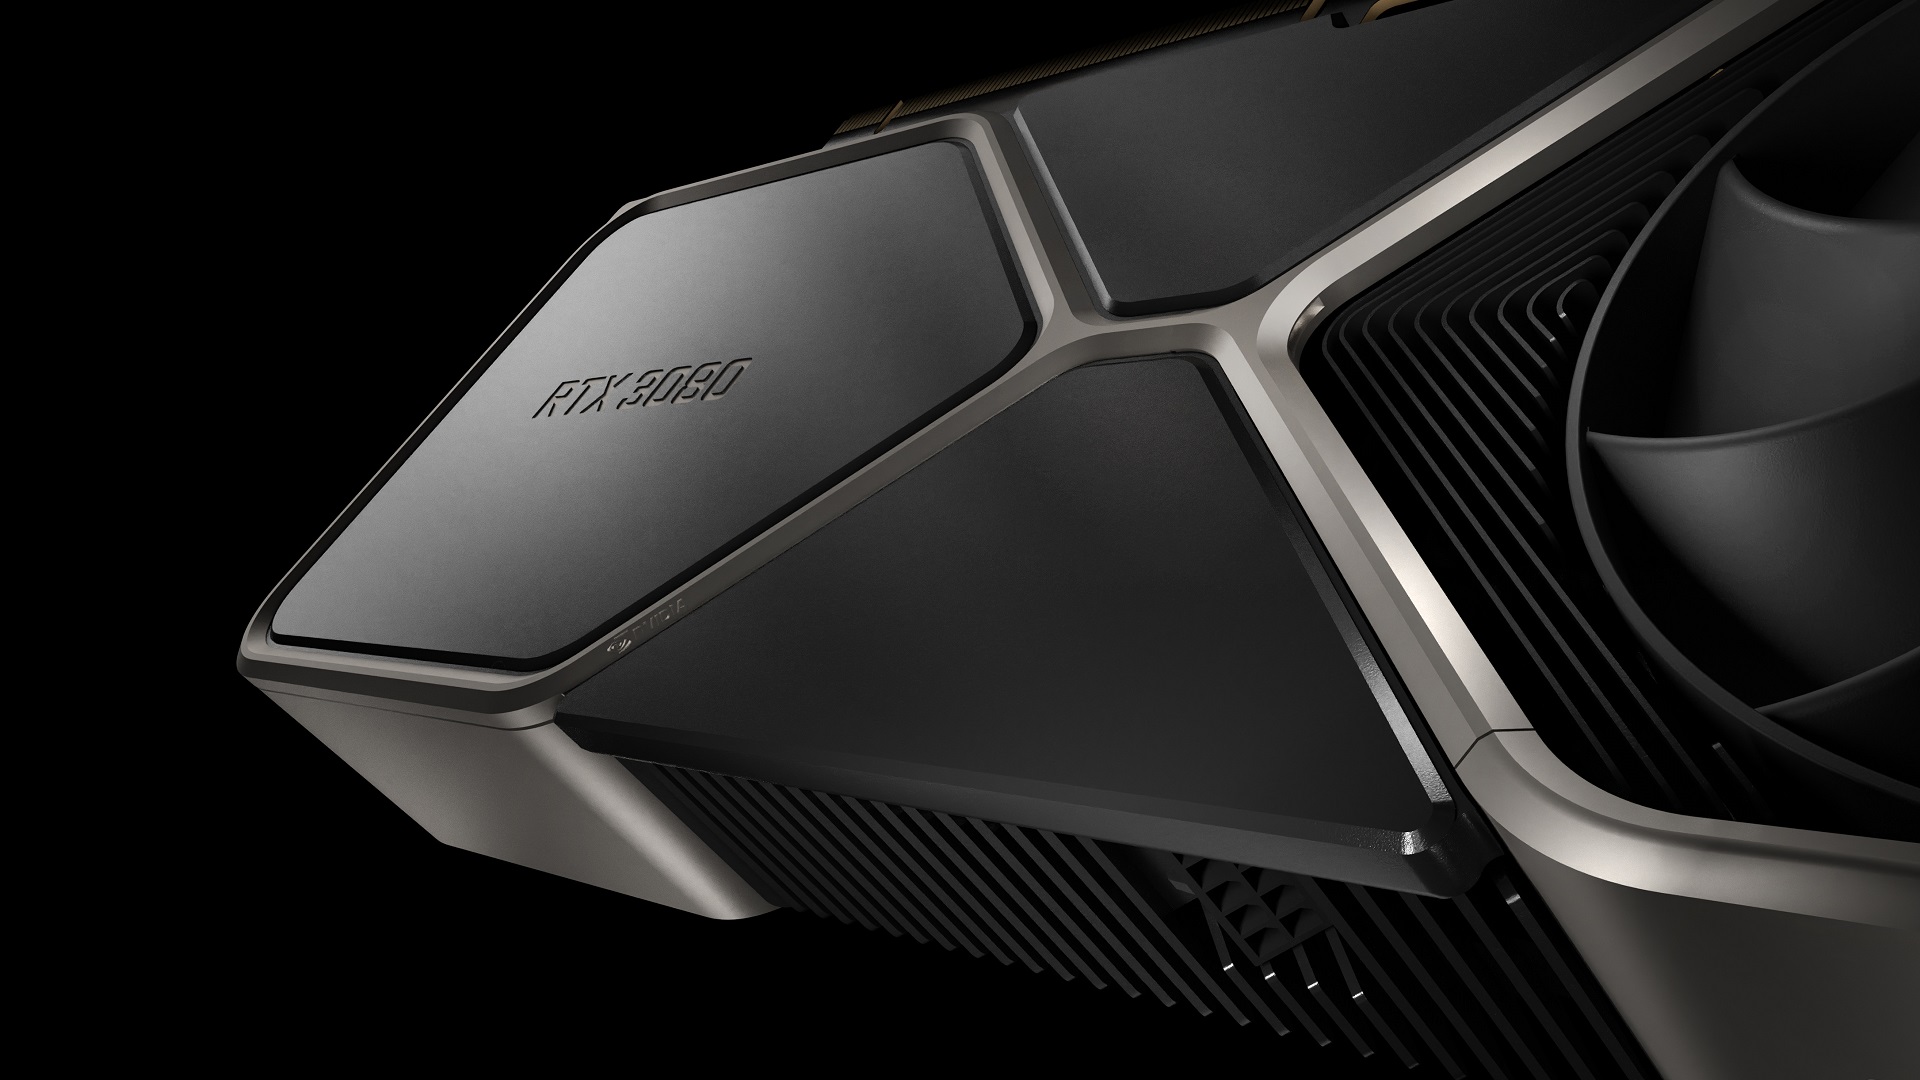 Geforce Rtx 3080 on Nvidia uus lipulaev järgmise põlvkonna GPU